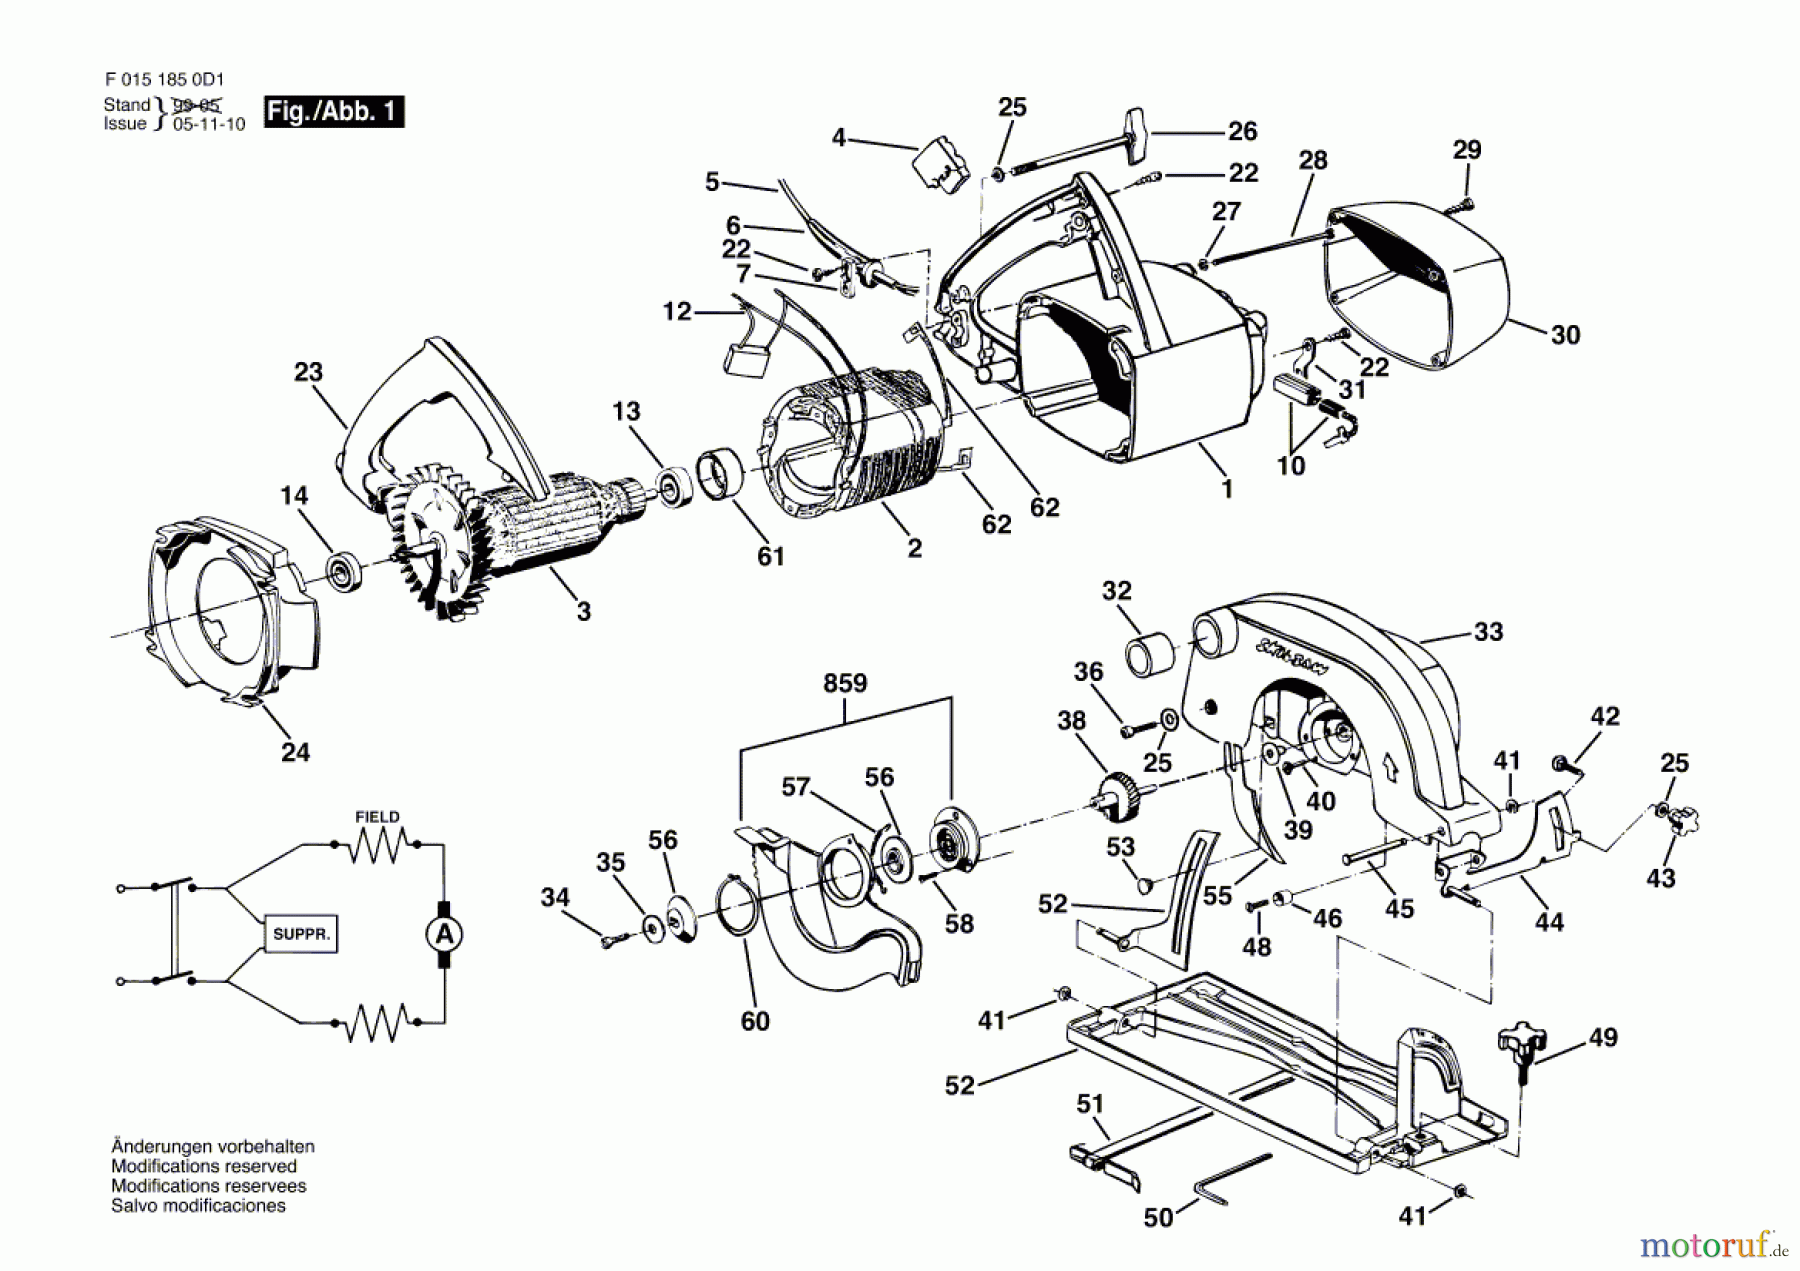  Bosch Werkzeug Handkreissäge 5751 Seite 1